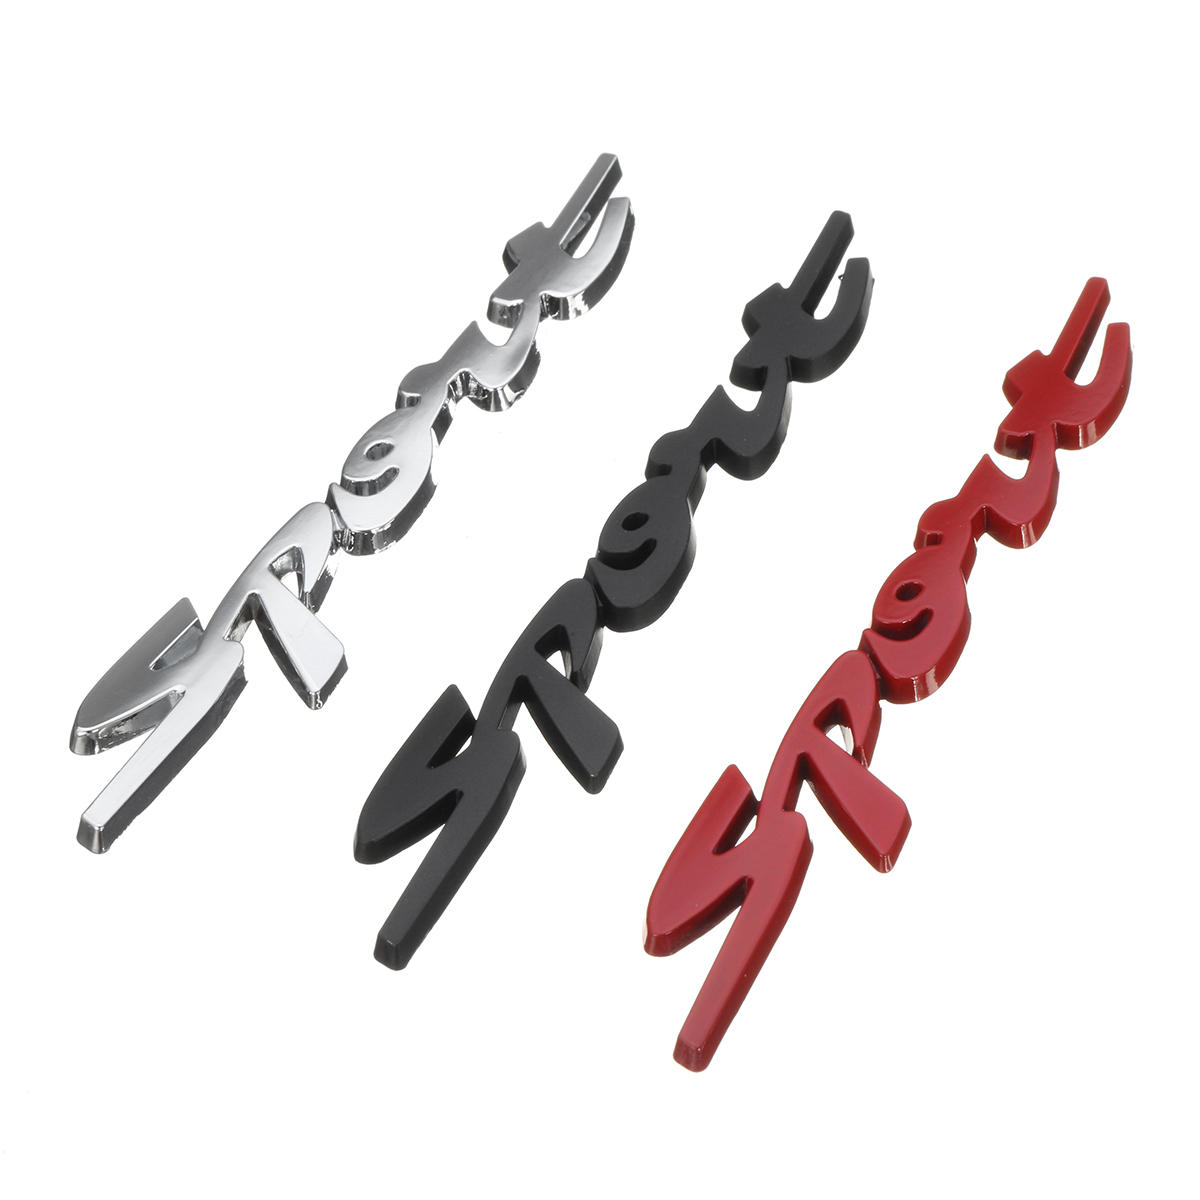 

3D Chrome Sport Логотип Эмблема Значок Металлические Наклейки Наклейка Красный / Серебро / Черный для Авто Мотор Racing